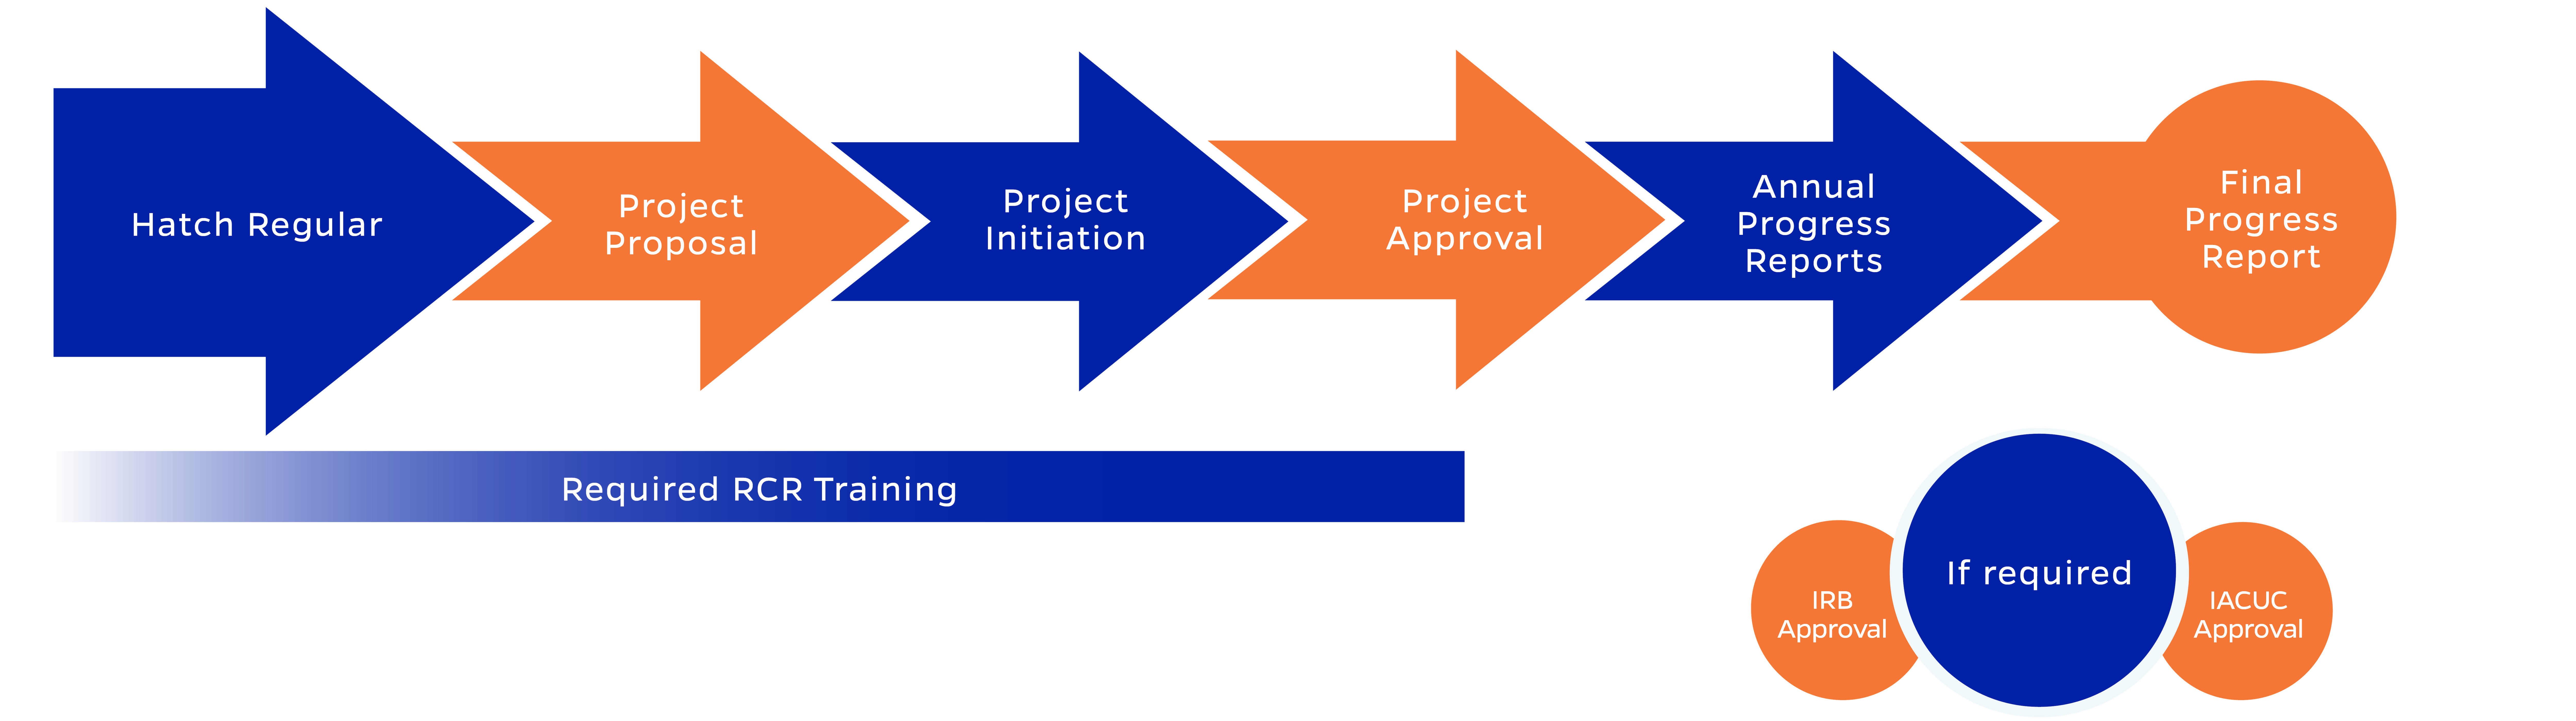 Flowchart demonstrating the process described below